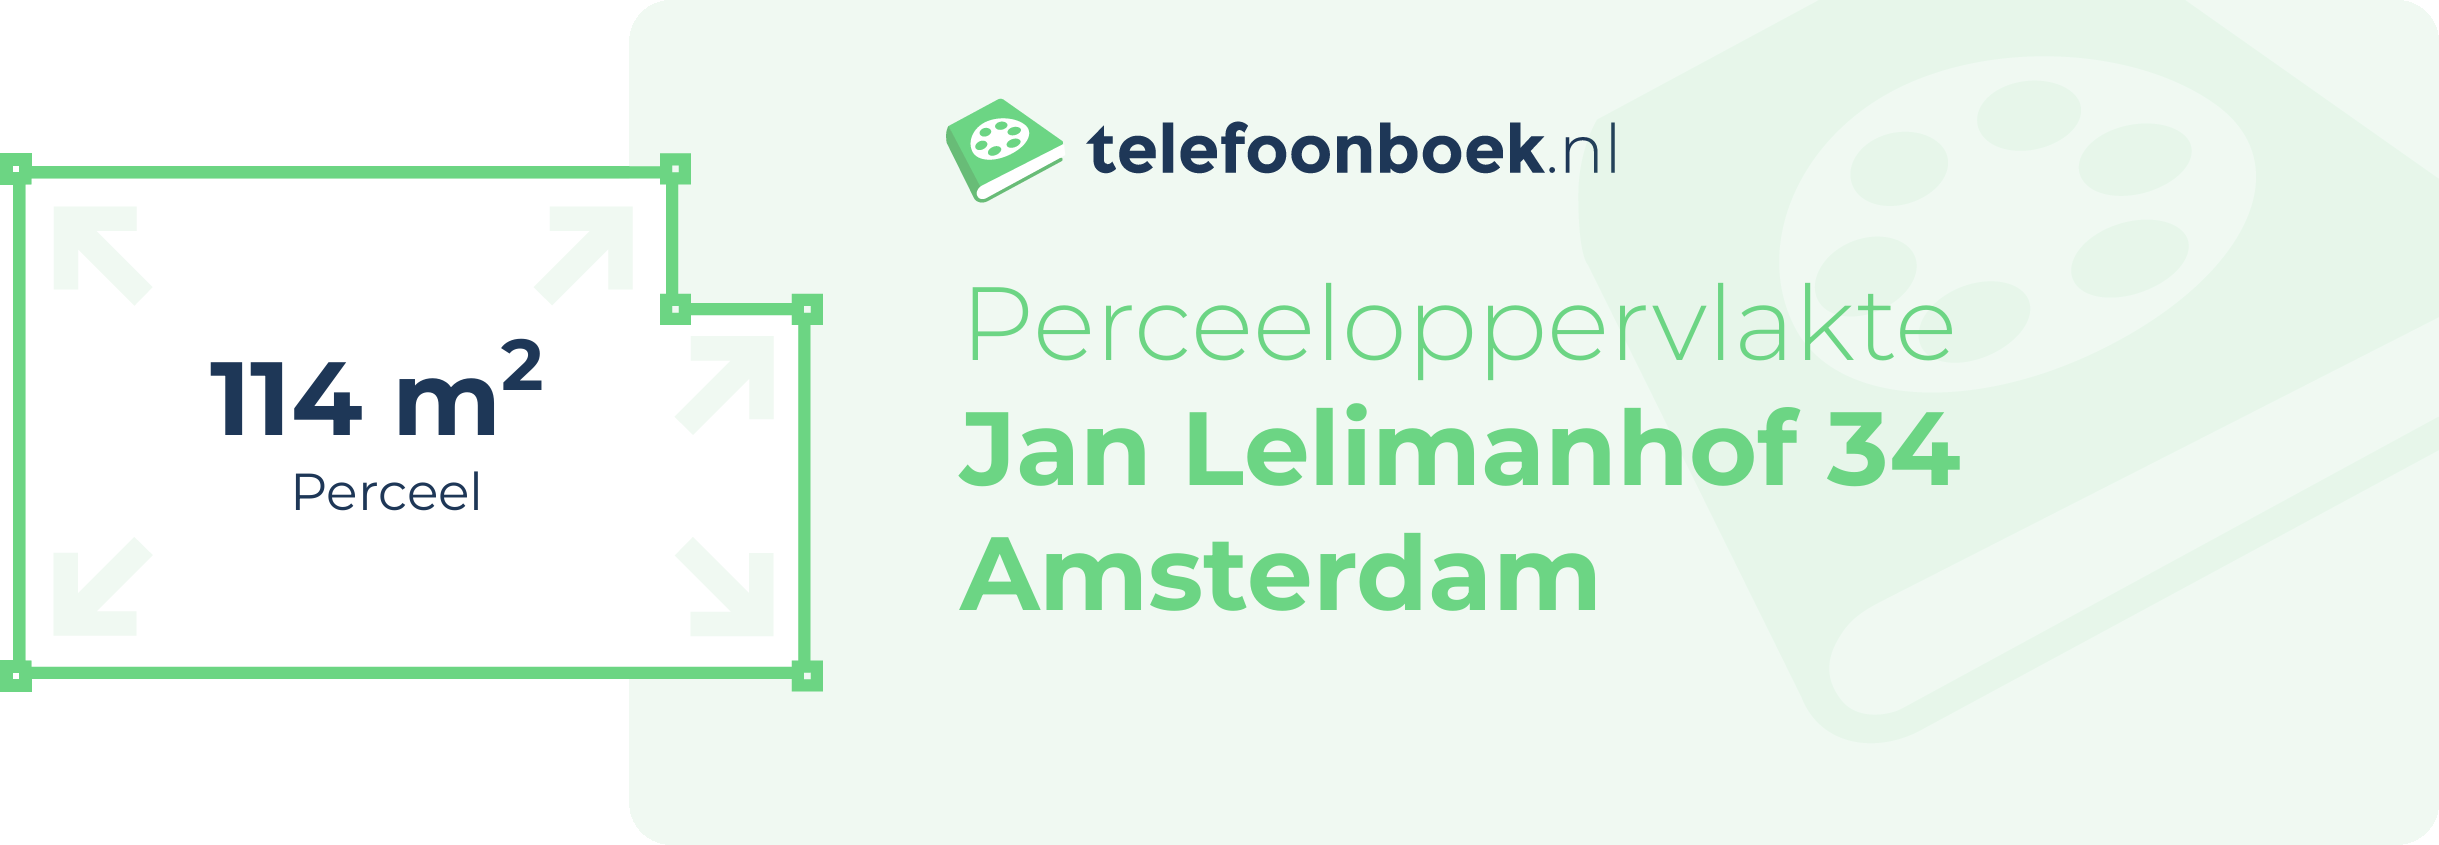 Perceeloppervlakte Jan Lelimanhof 34 Amsterdam